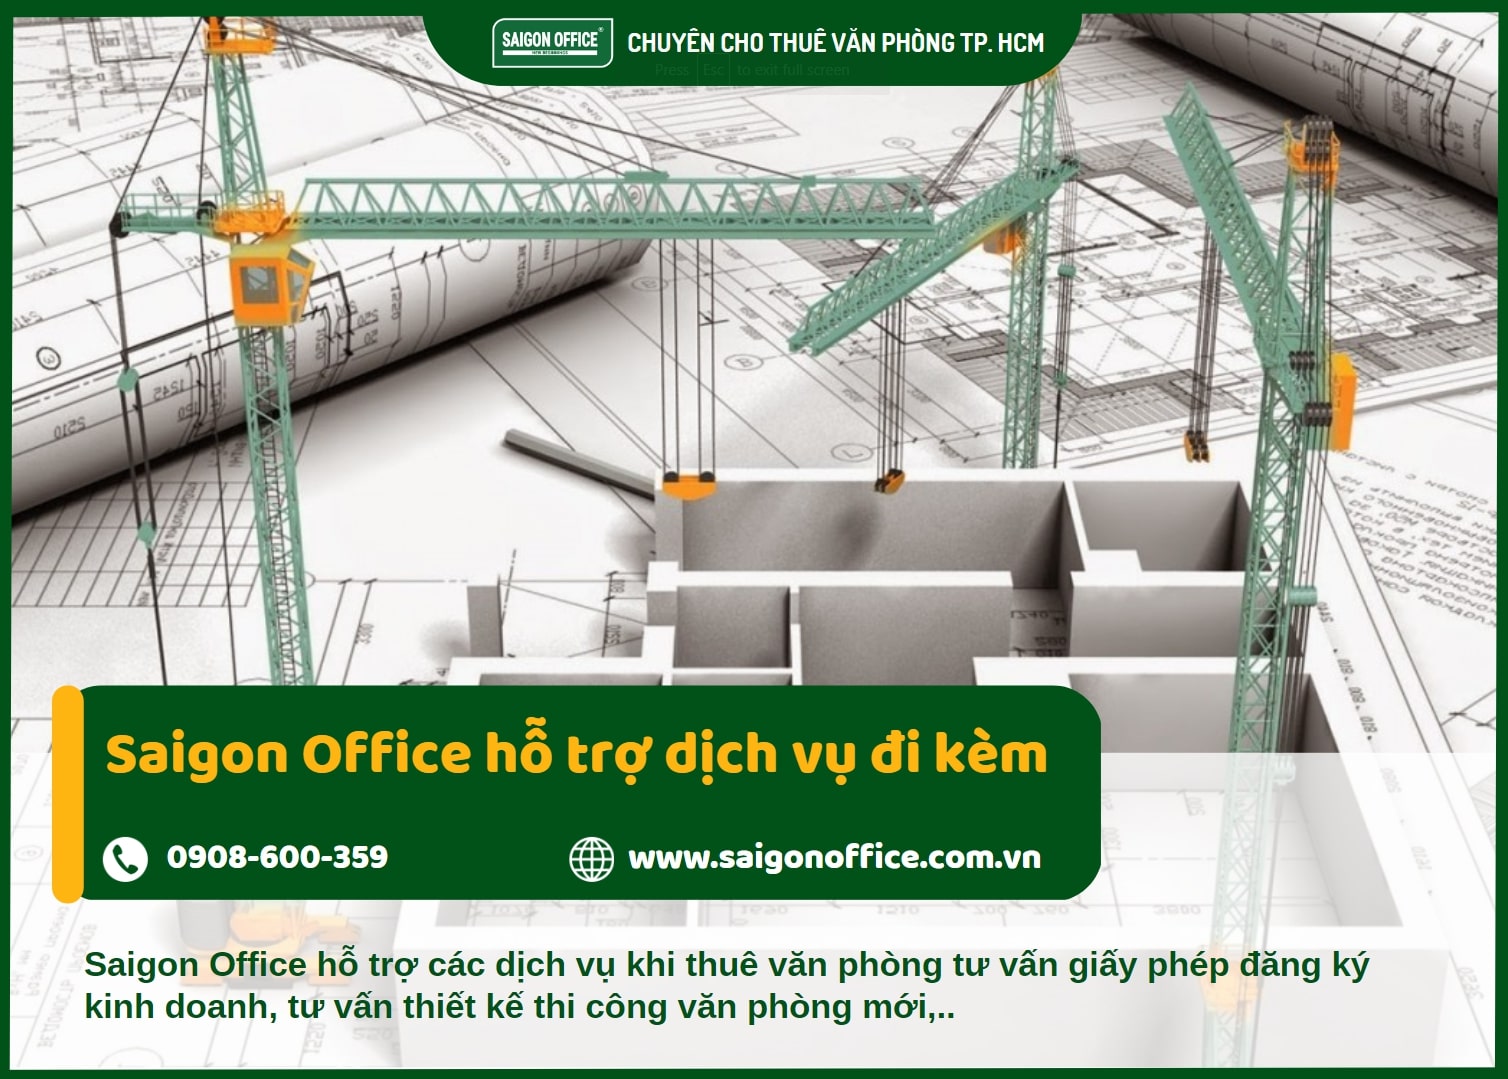 Dịch vụ hỗ trợ kèm theo khi thuê văn phòng cùng Saigon Office